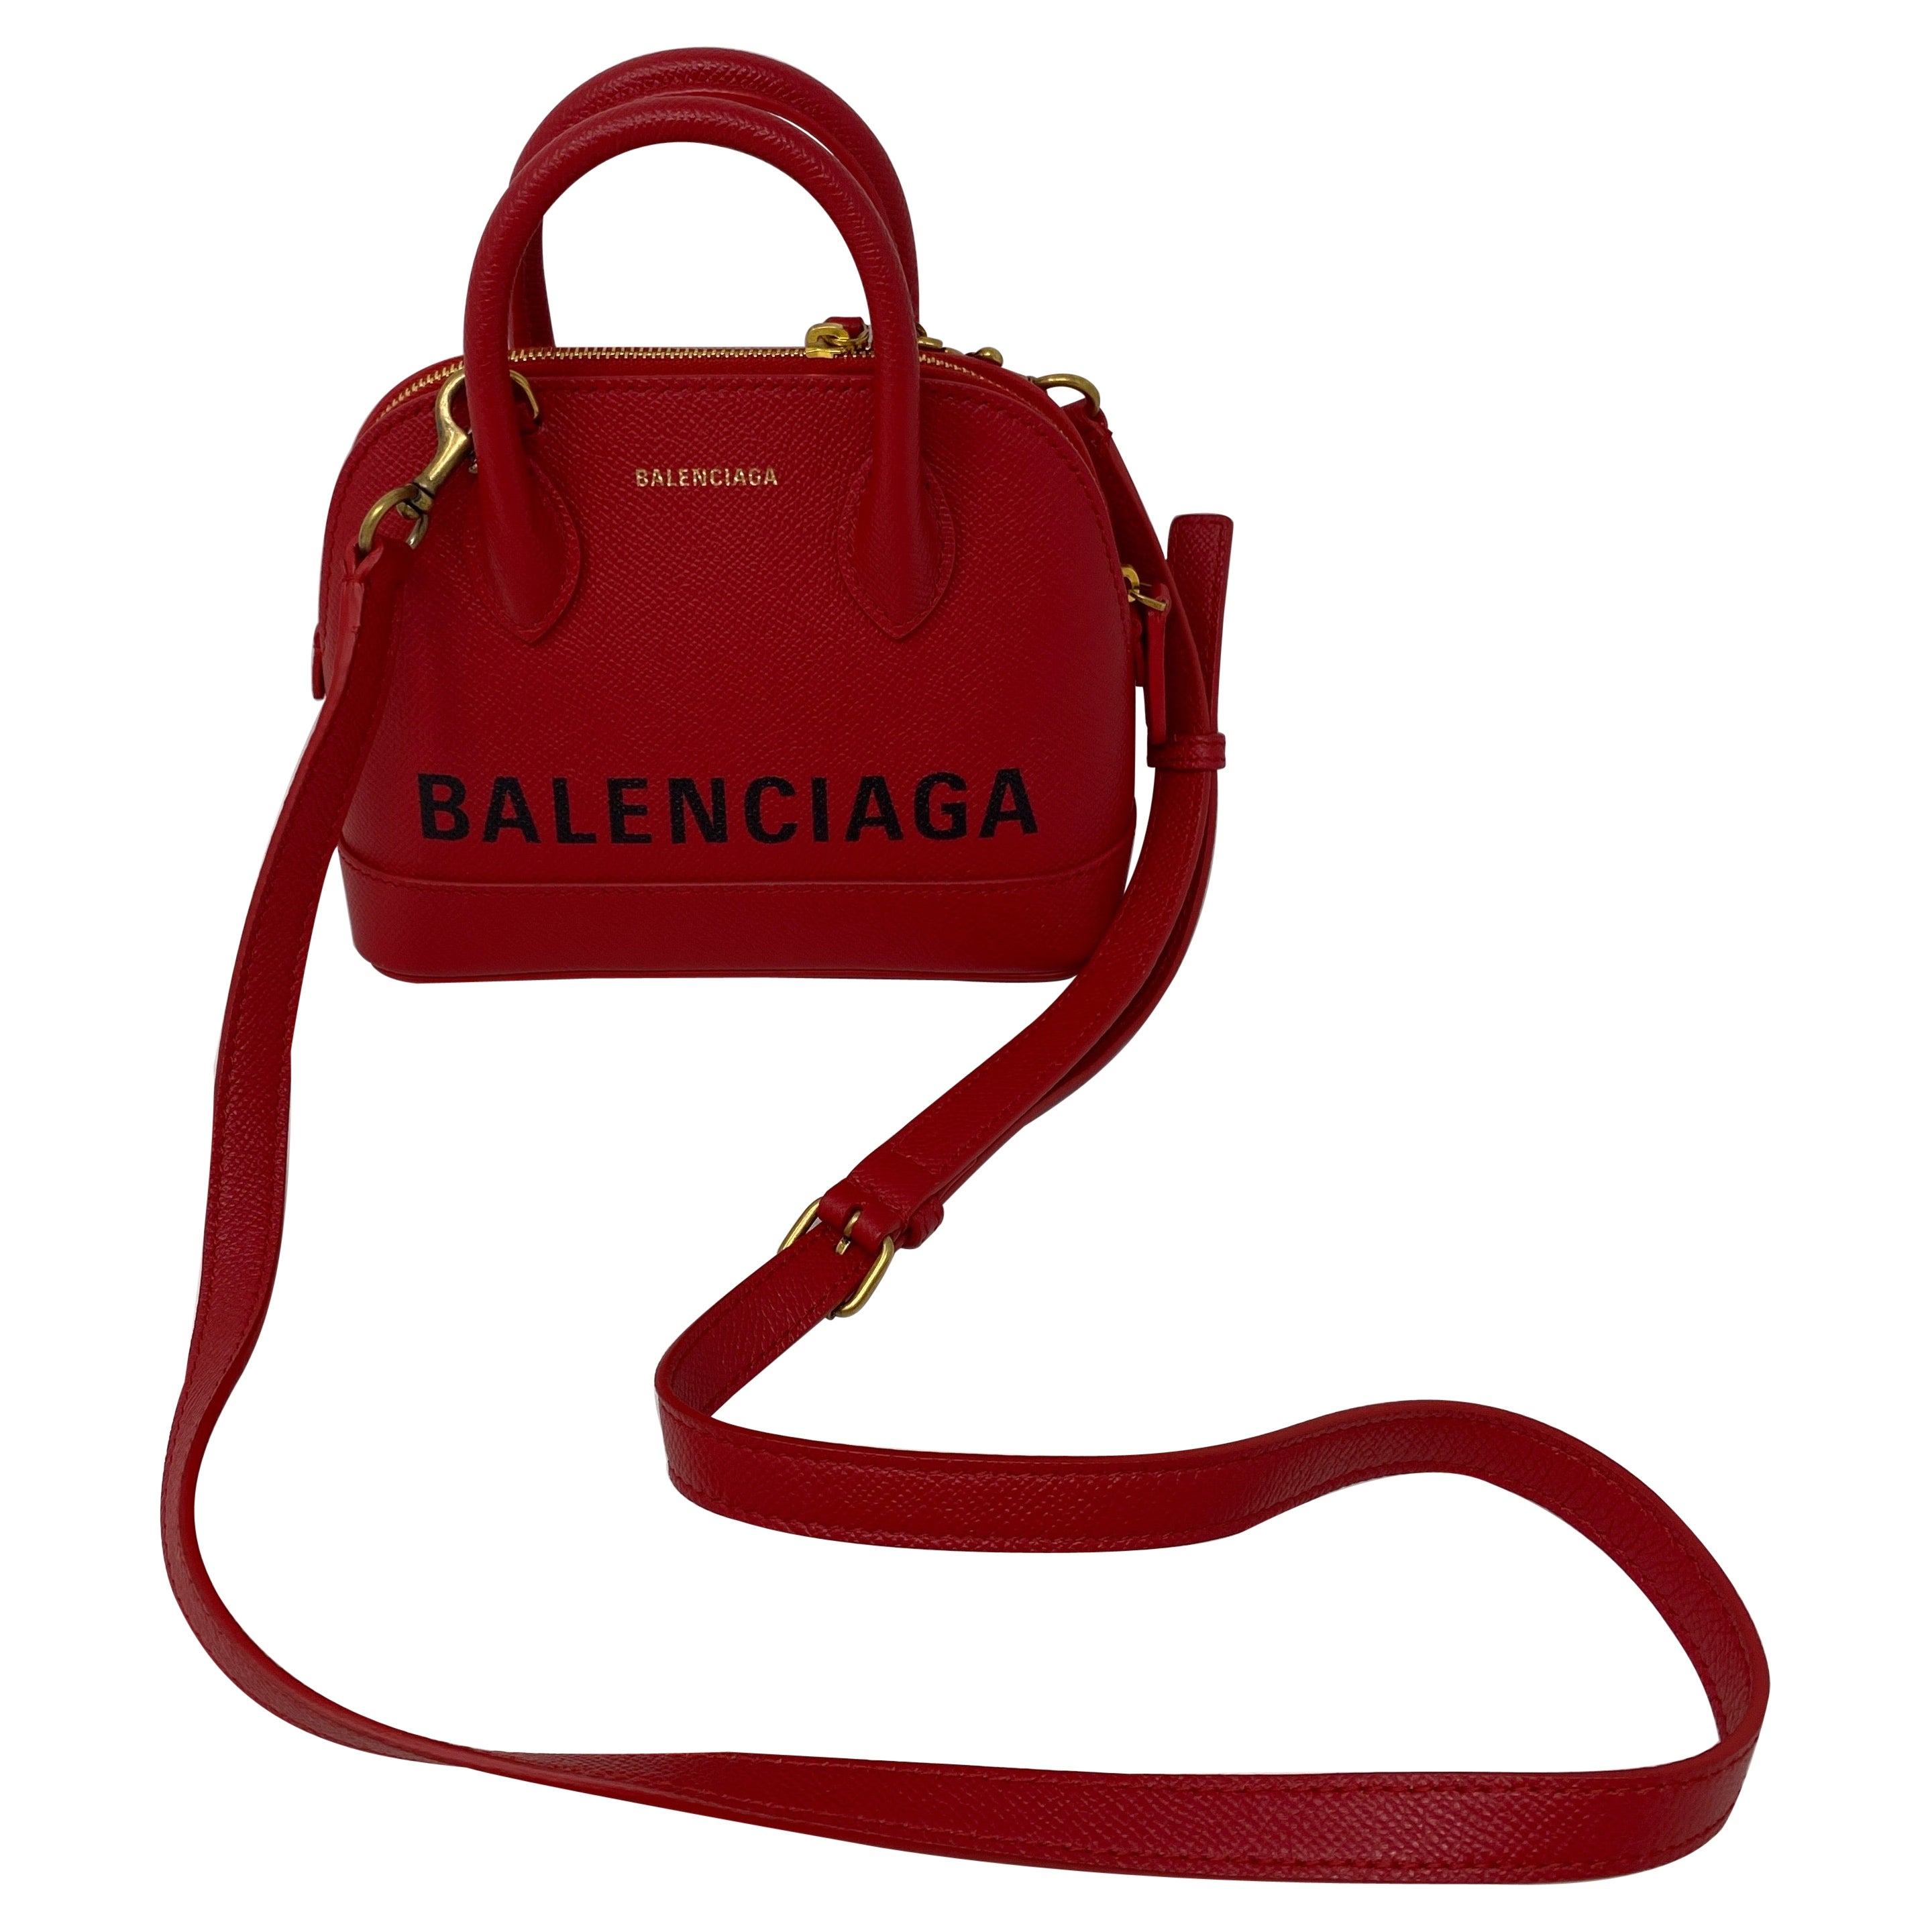 Balenciaga Red Leather Mini Bag